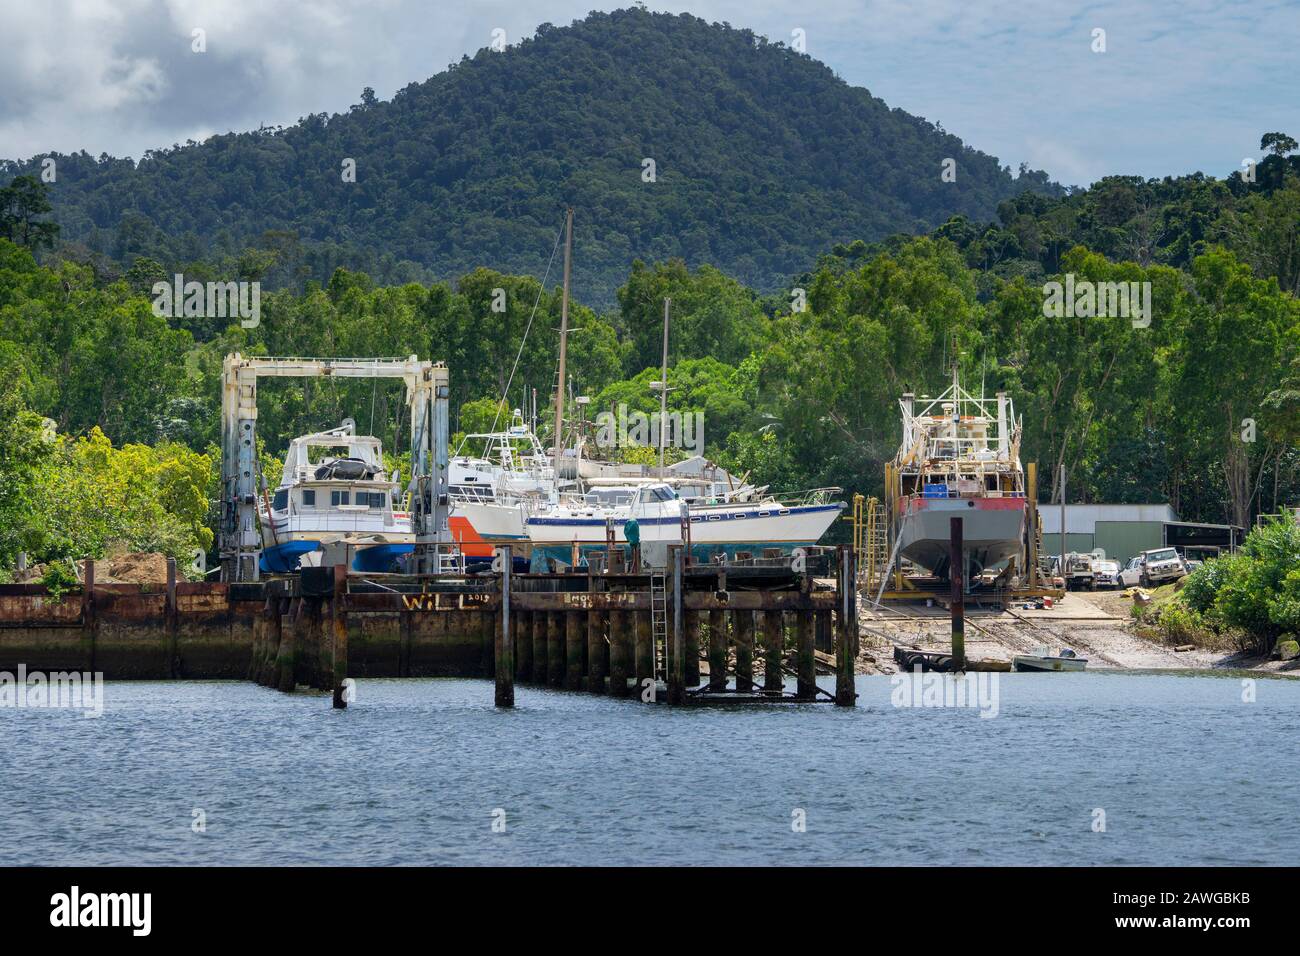 Petit chantier naval sur les rives de la rivière Johnstone près d'Innisfail North Queensland, Australie Banque D'Images